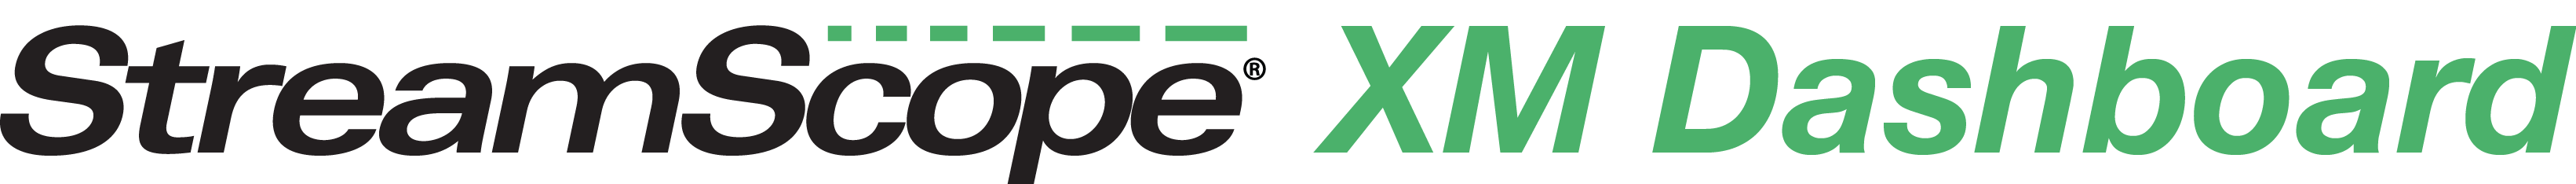 StreamScope XM Dashboard logo